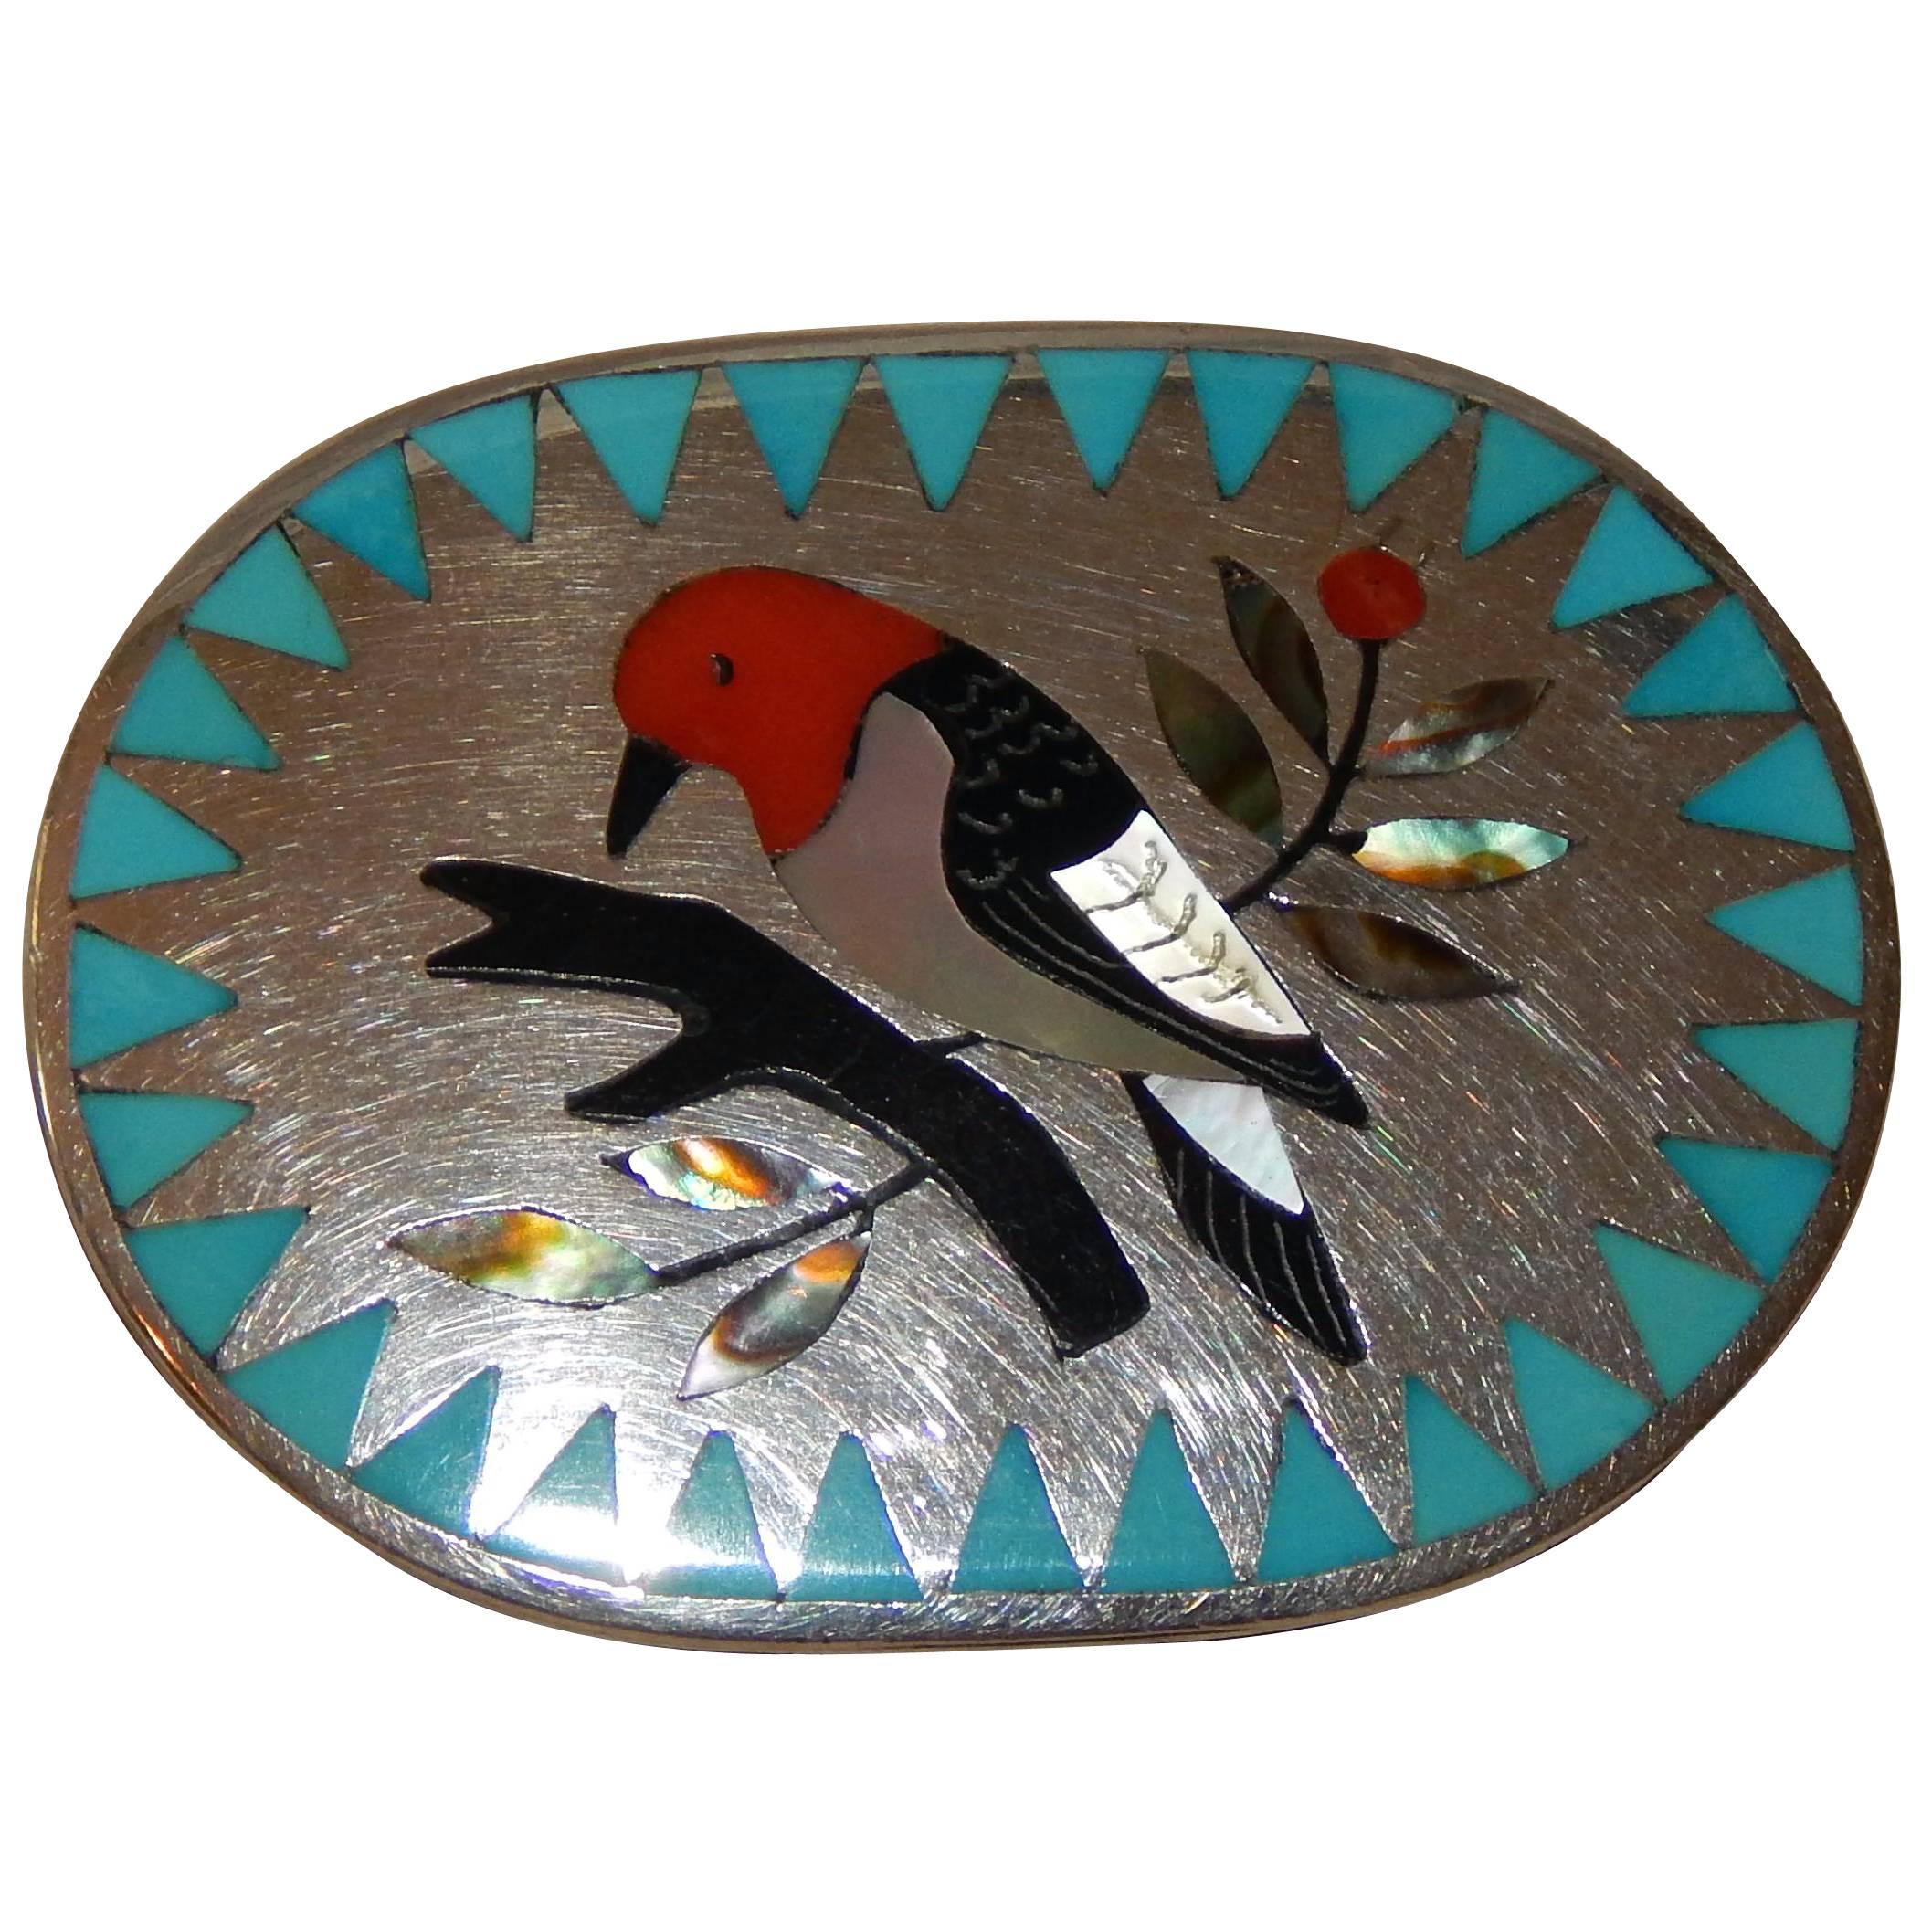 Dennis & Nancy Edaakie Zuni Inlay Woman's Sterling Belt Buckle with Bird Design